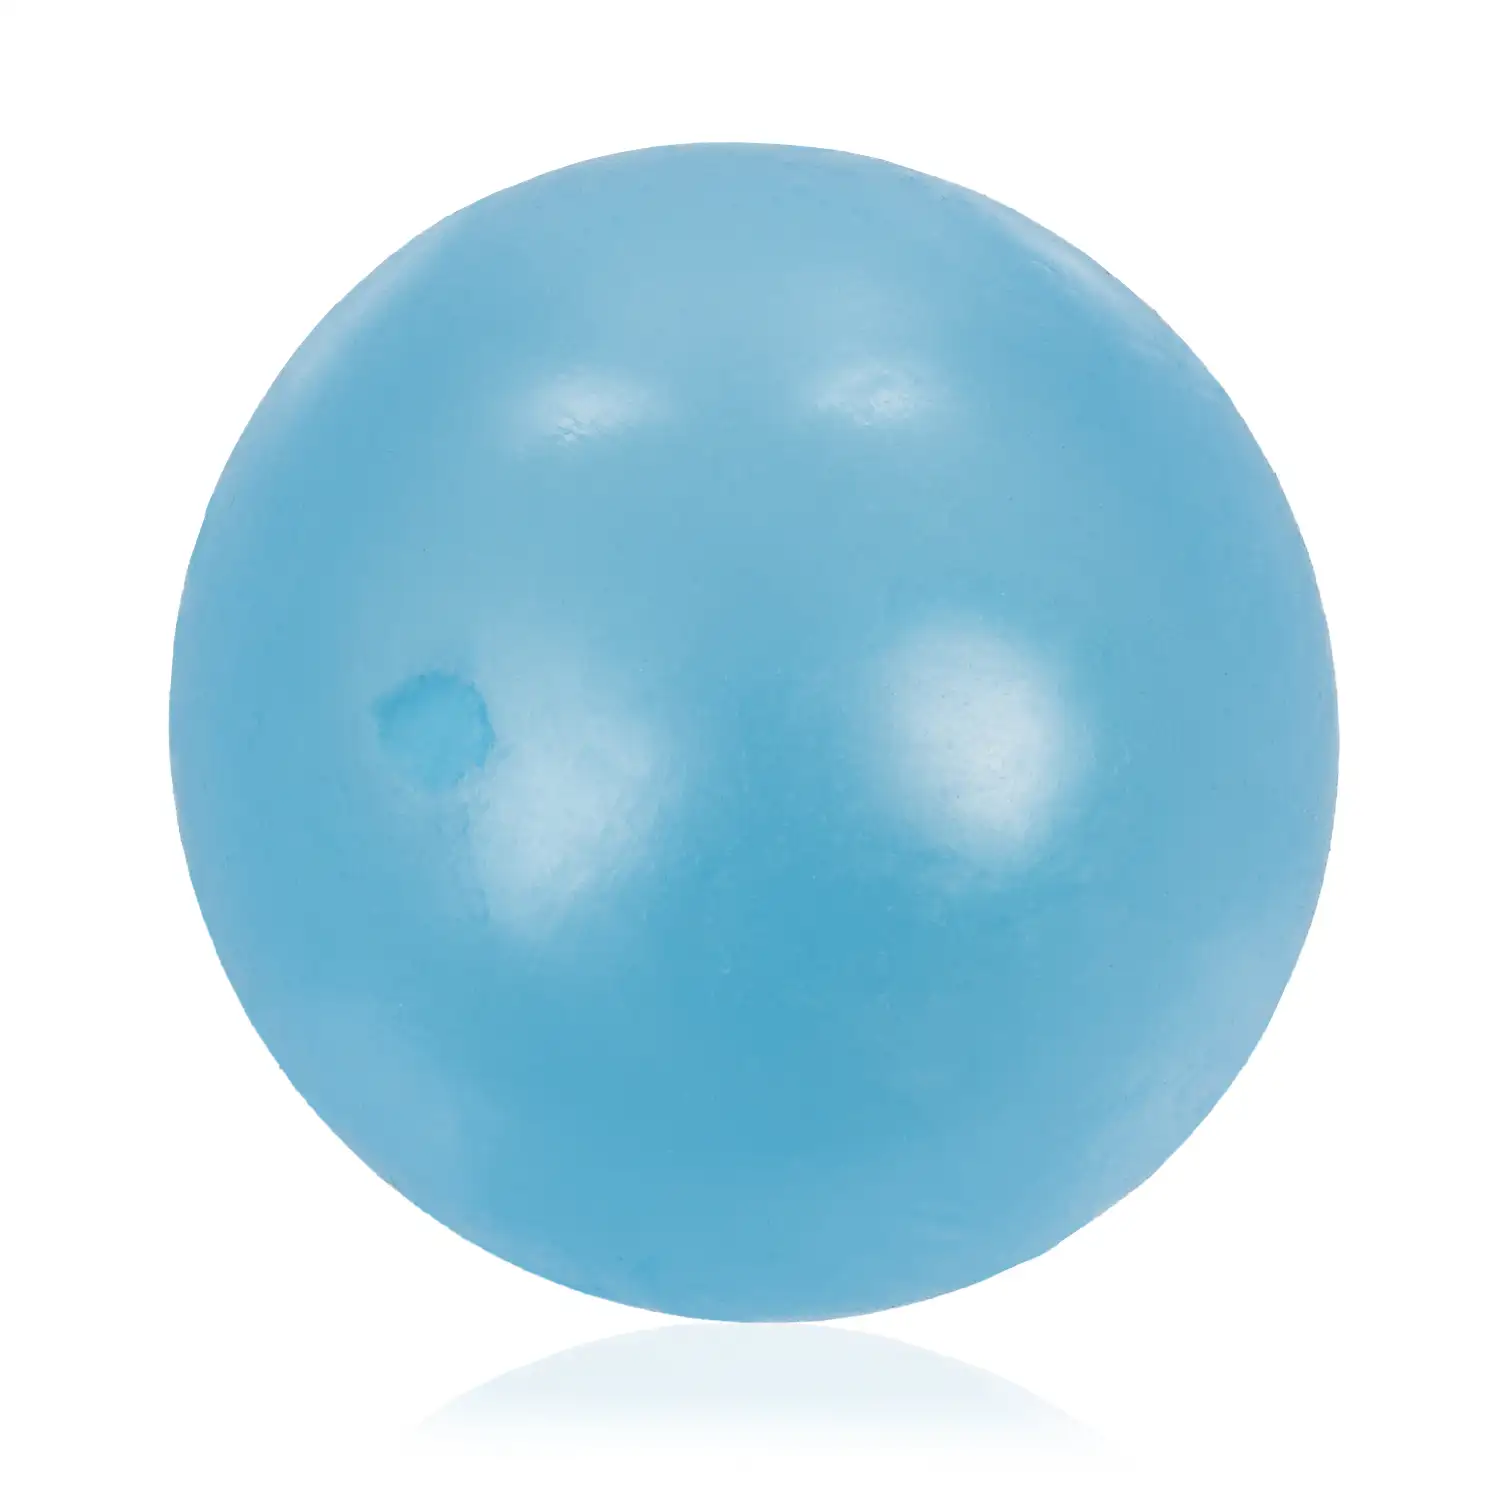 Bola de silicona antiestrés de 5,5cm, brilla en la oscuridad. Bola blanda para apretar y estrujar. Pegajosa, se pega en techo y paredes durante unos segundos.